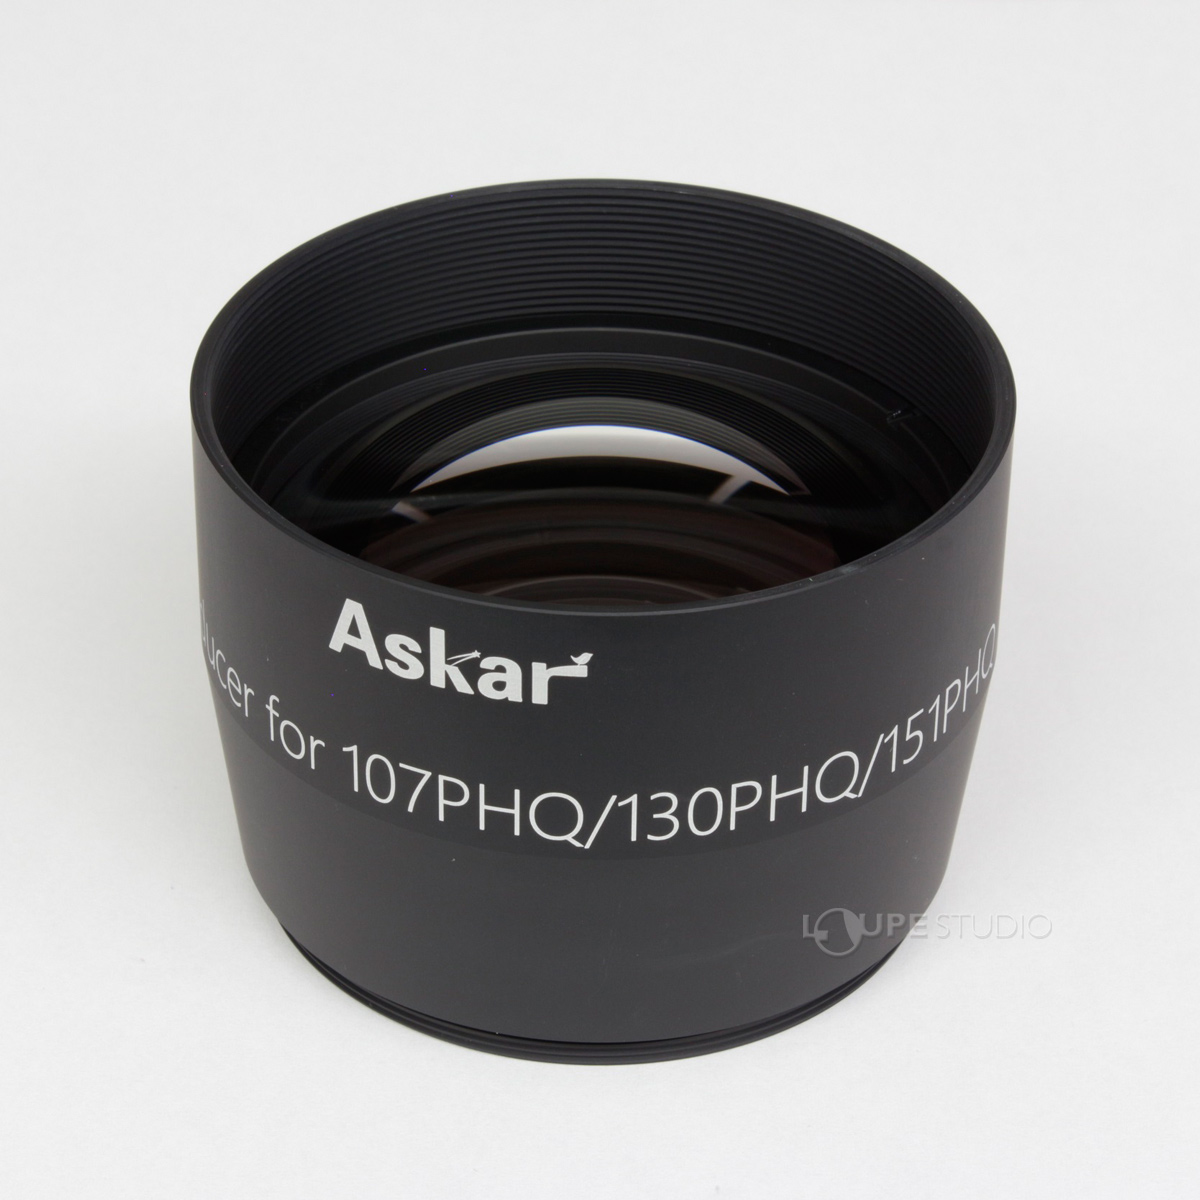 正規代理店品 天体望遠鏡 鏡筒 Askar アスカー 107/130PHQ